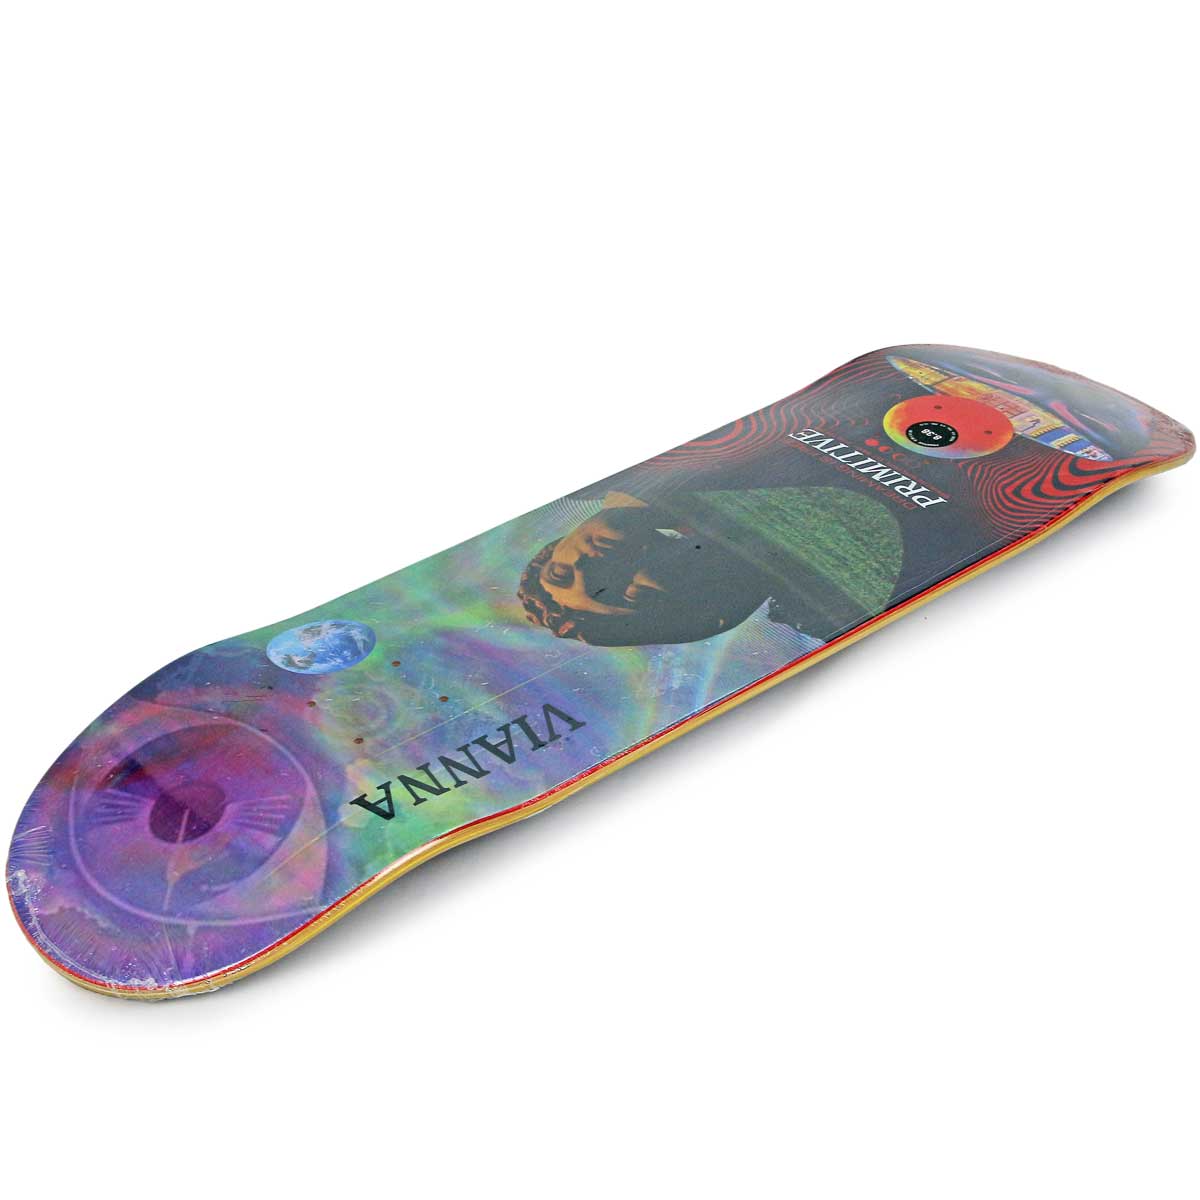 プリミティブ 8.38インチ スケボー デッキ Primitive Skateboards Pro